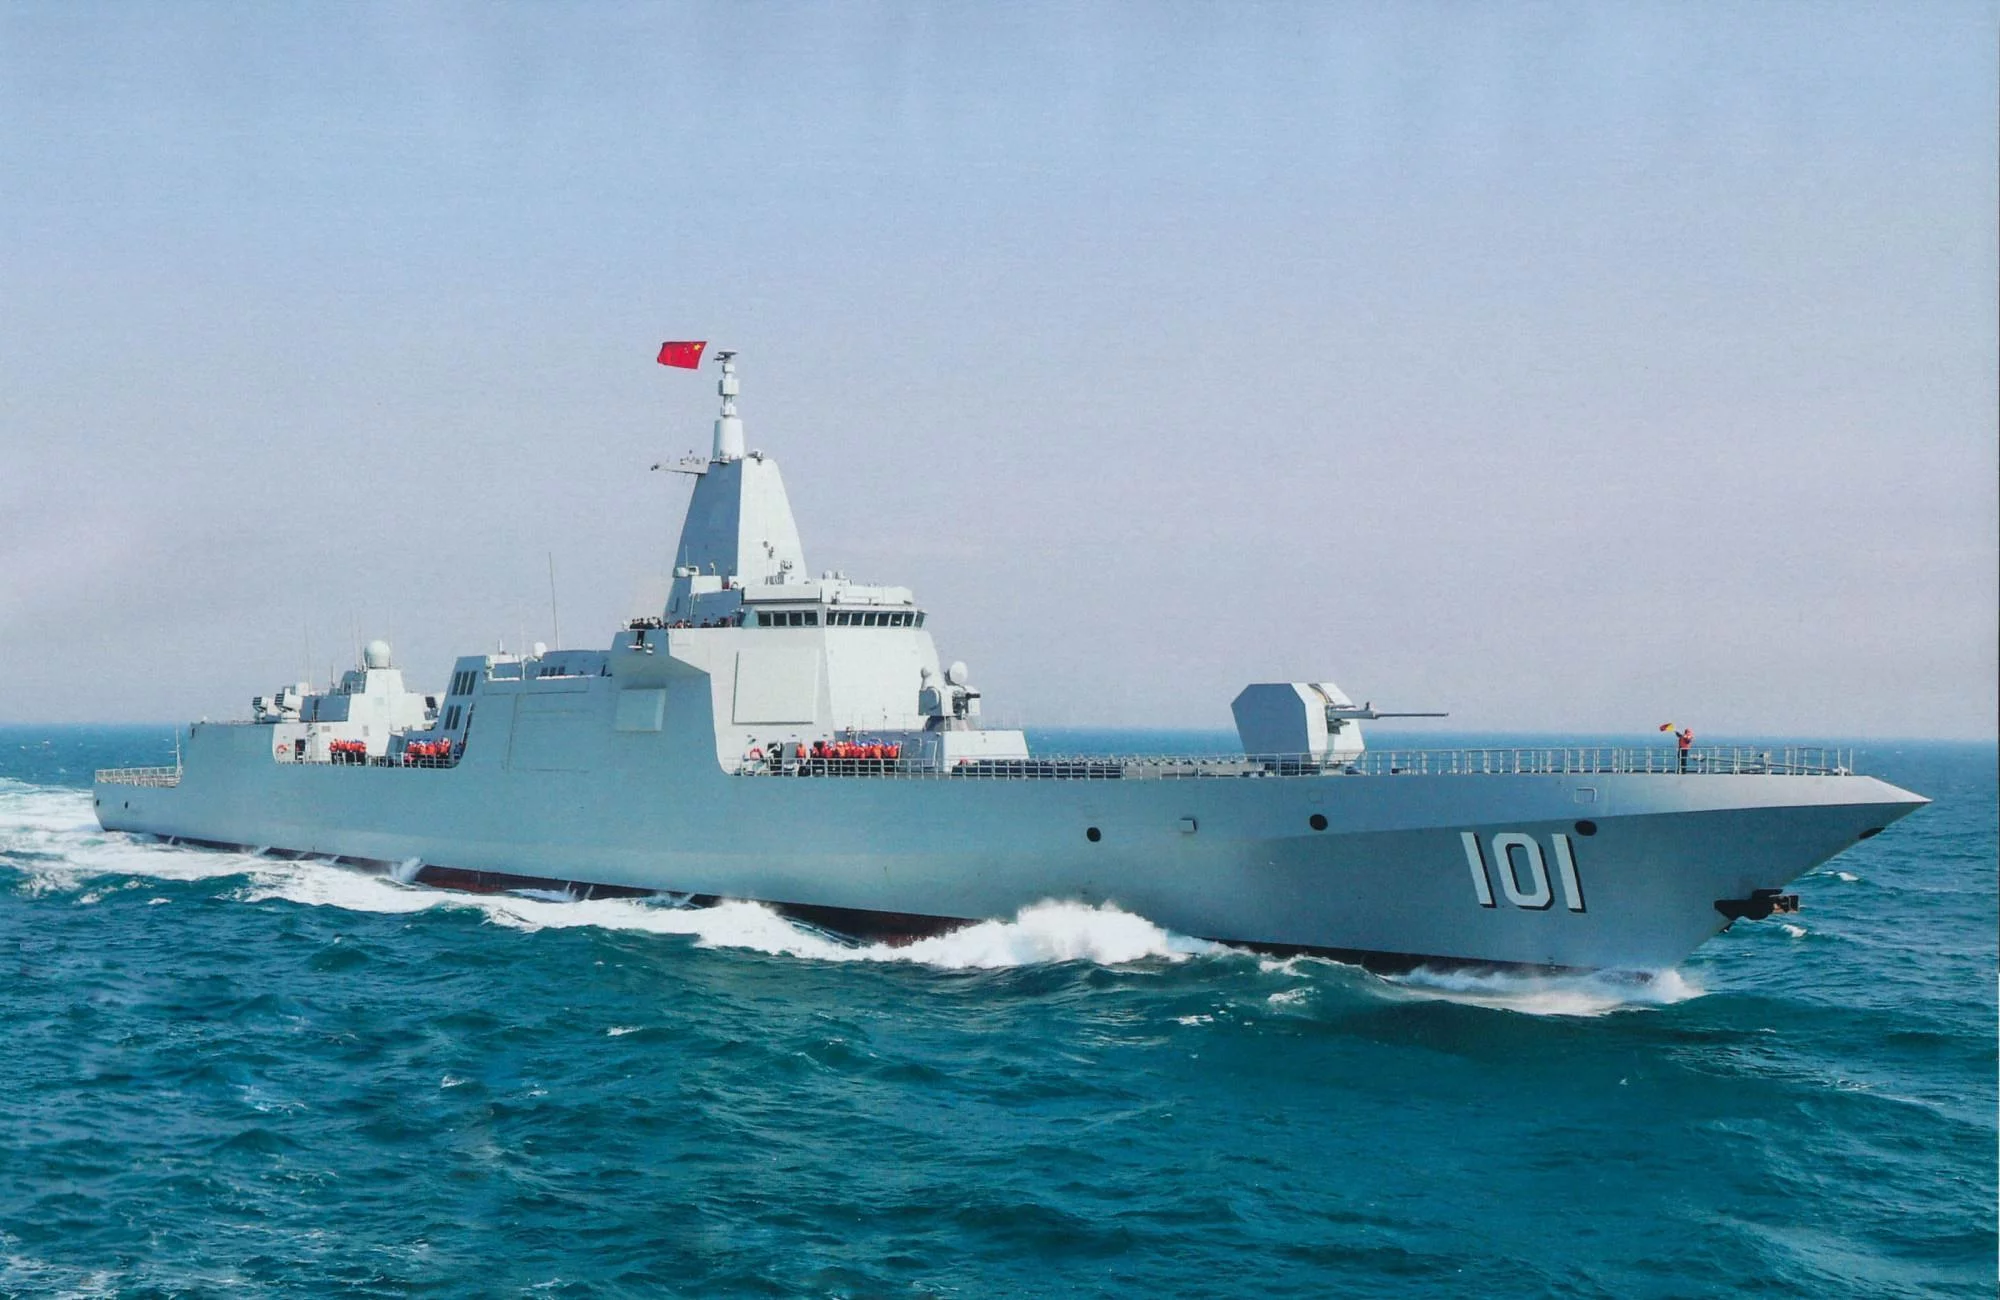 中国055型万吨大驱过对马海峡首赴日本海 各国应学会习以为常 每日舰载武器 Mdeditor